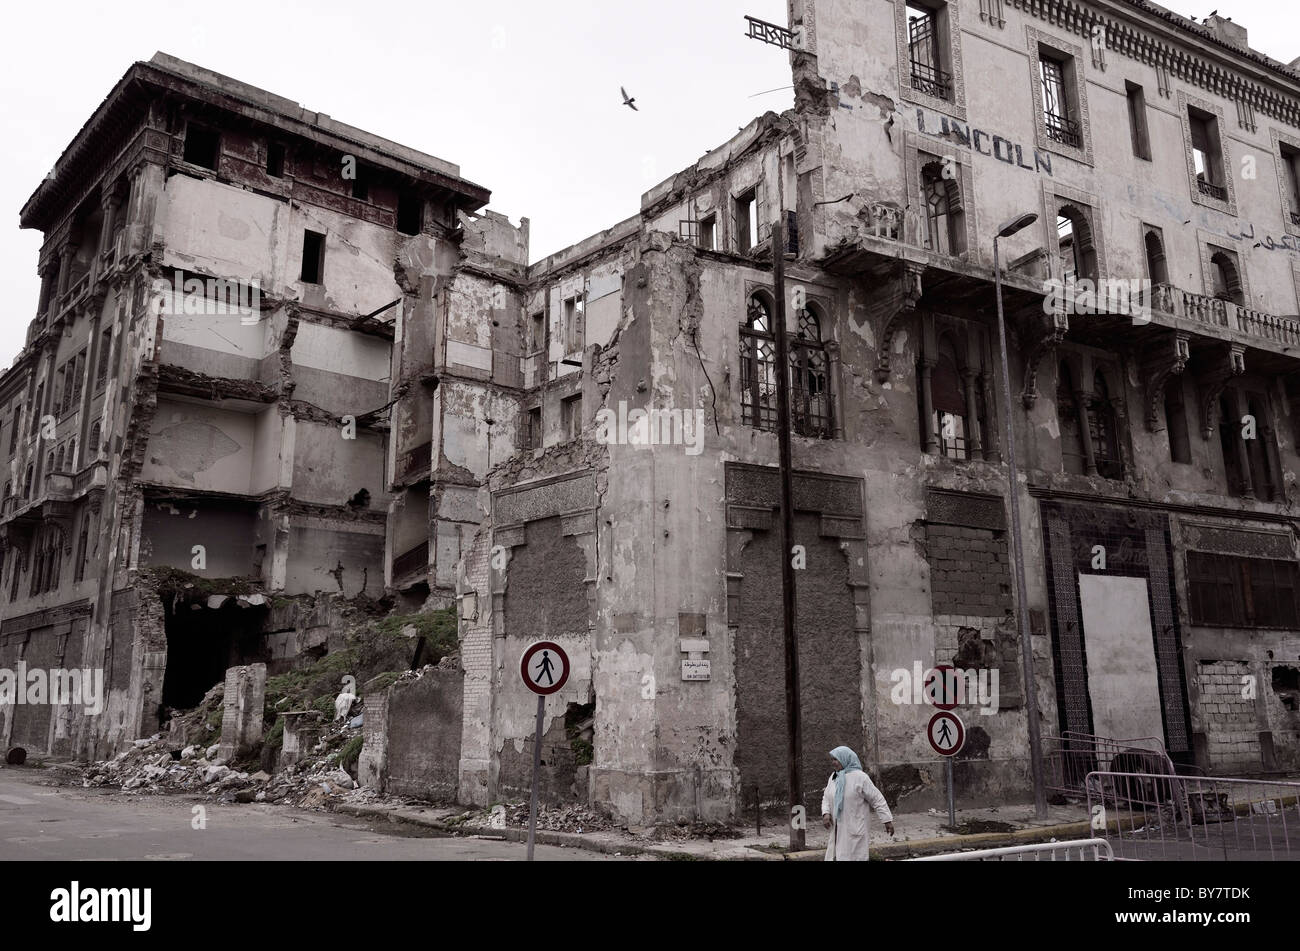 Hôtel Lincoln historique célèbre en ruine dans le centre-ville de Casablanca Maroc en monochrome Banque D'Images